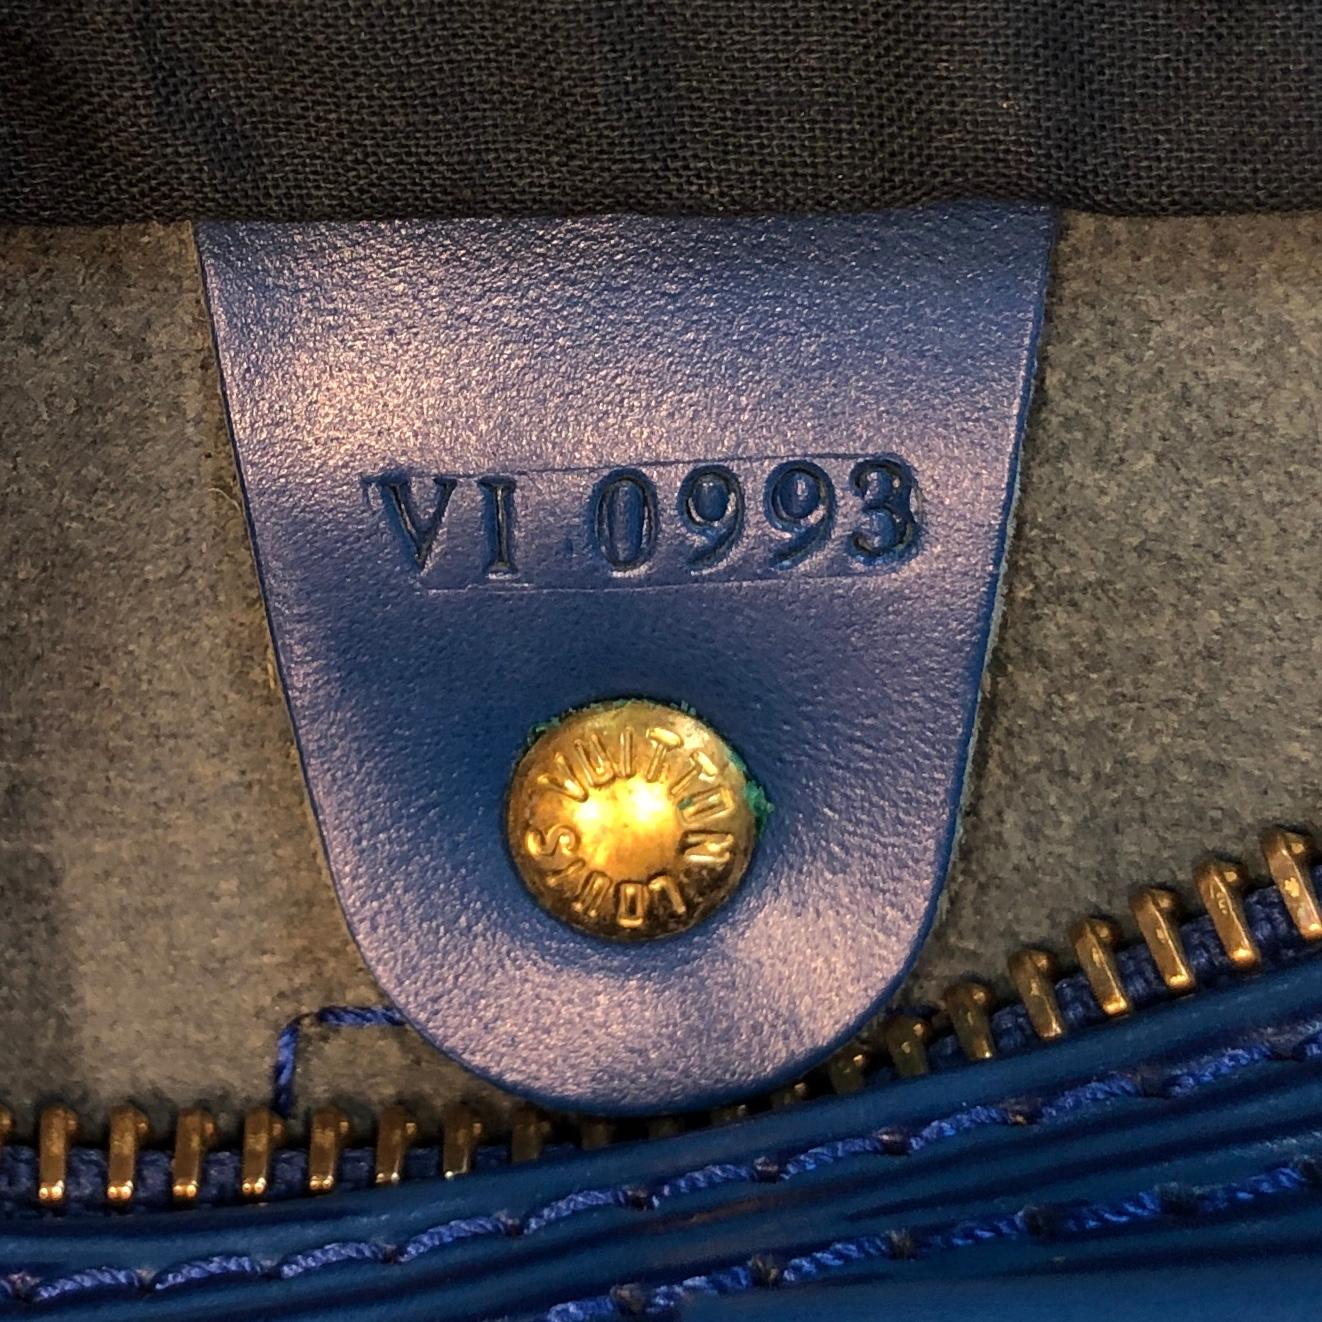 Louis Vuitton Speedy Handbag Epi Leather 25 5